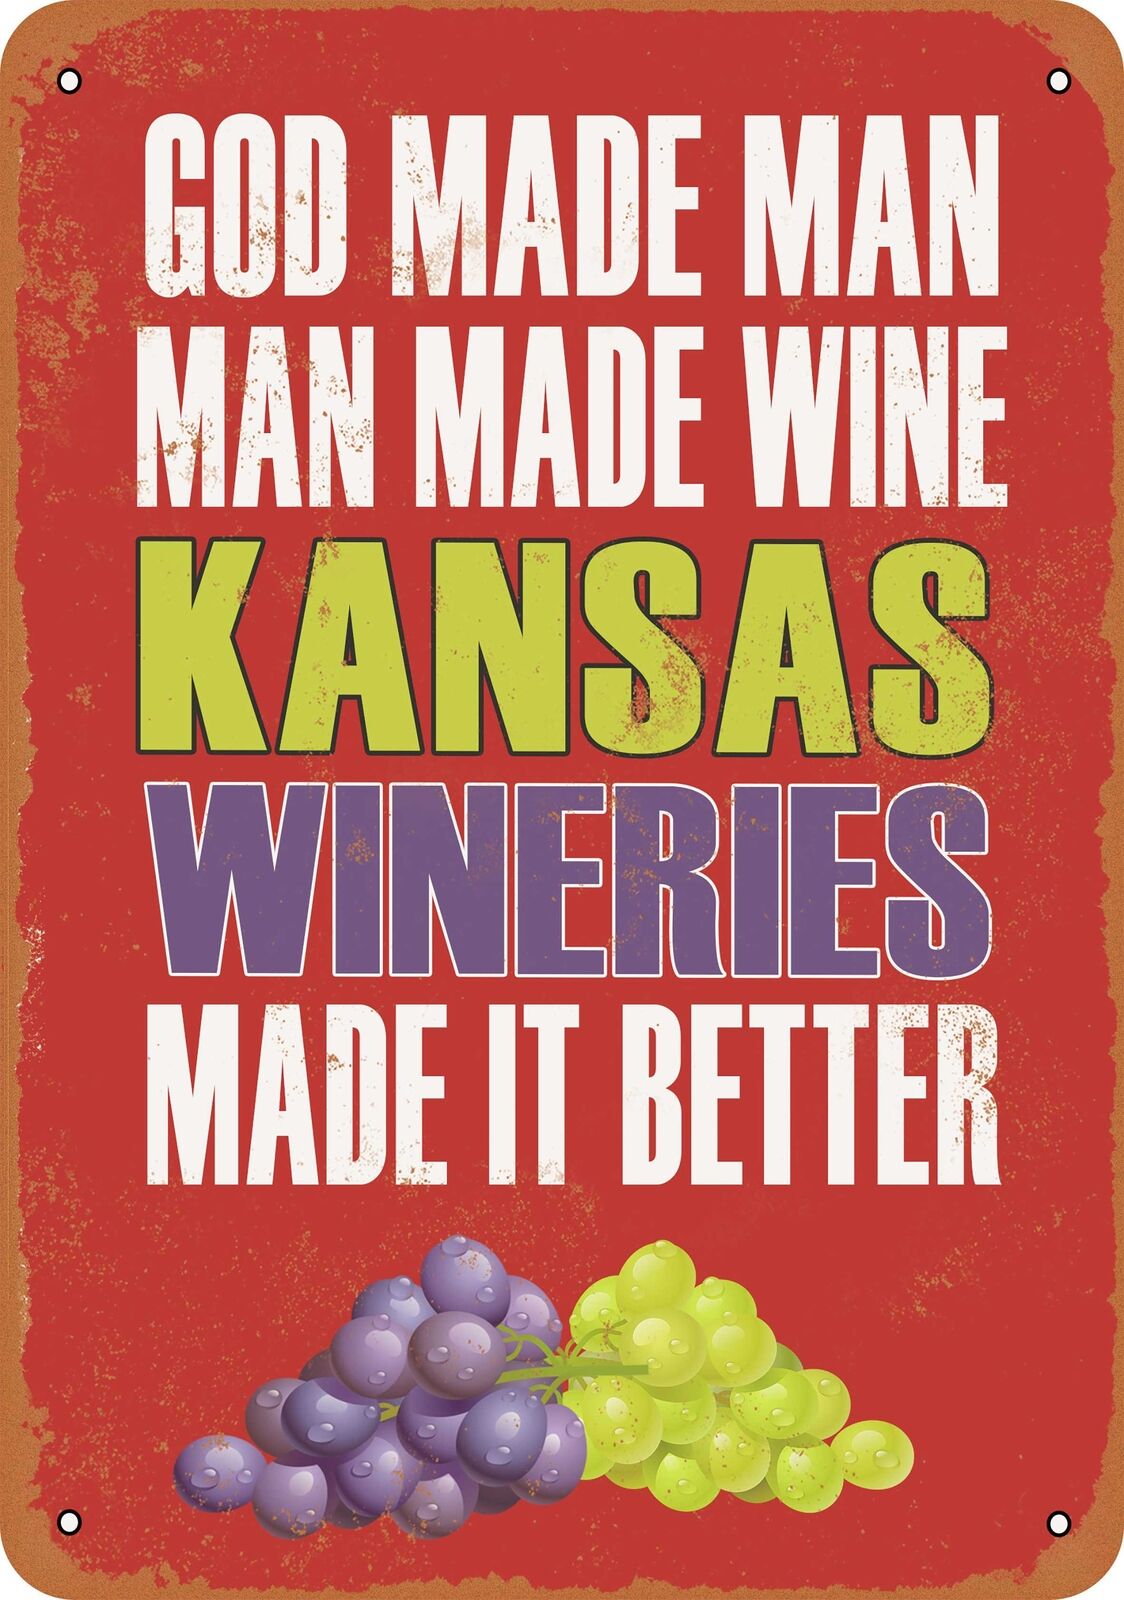 Metal Sign - Kansas Wineries Make Better Wine -- Vintage Look